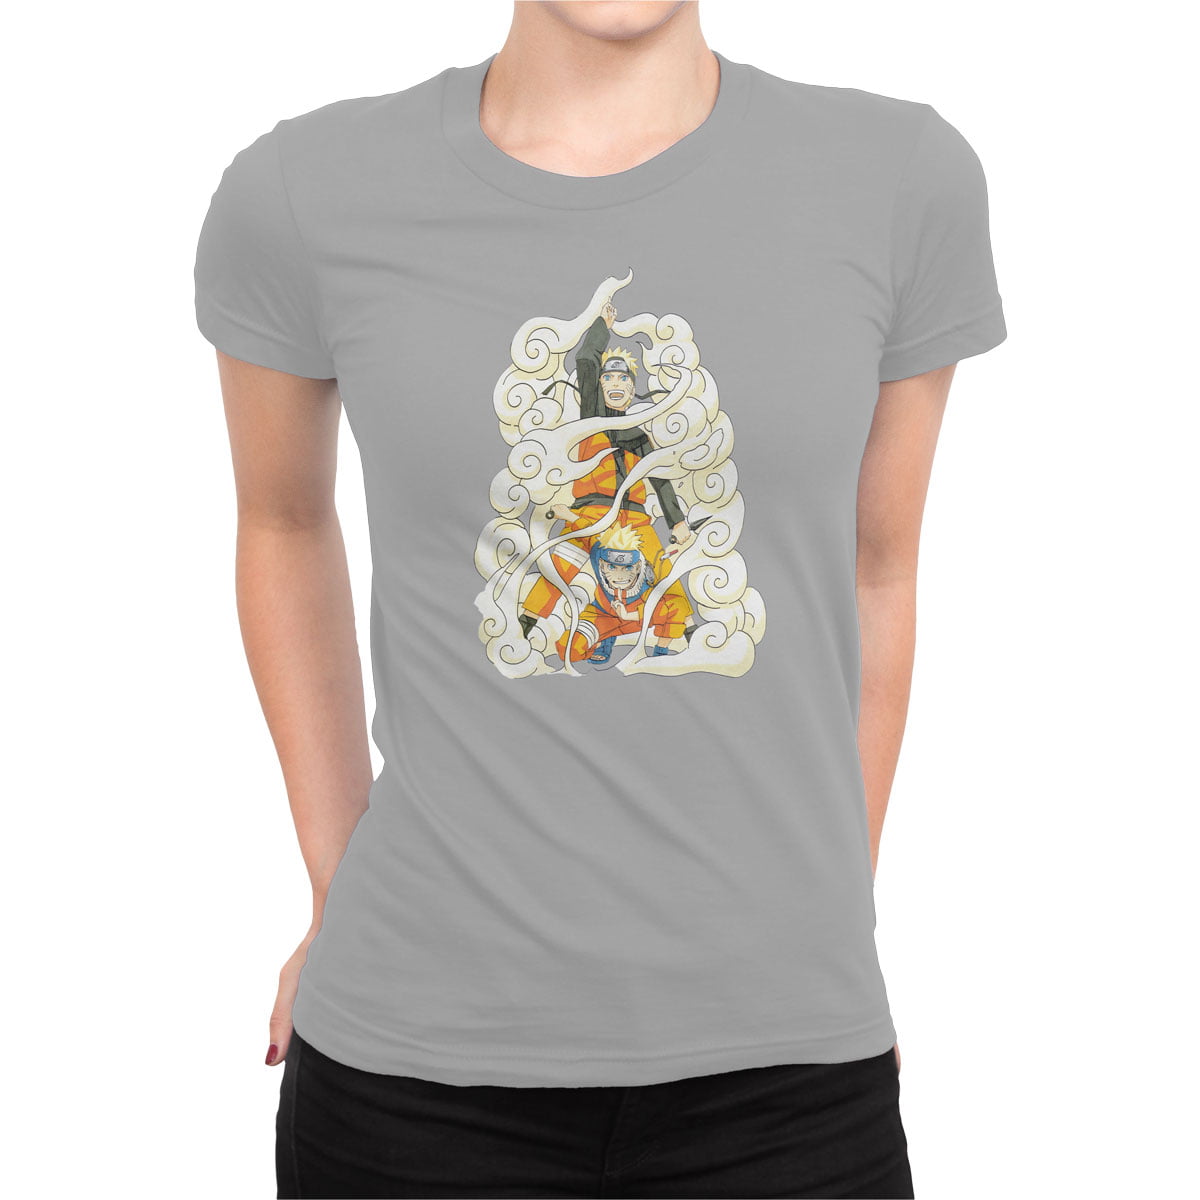 Naruto uzumaki no5 tisort kadin g - naruto uzumaki no5 kadın t-shirt - figurex